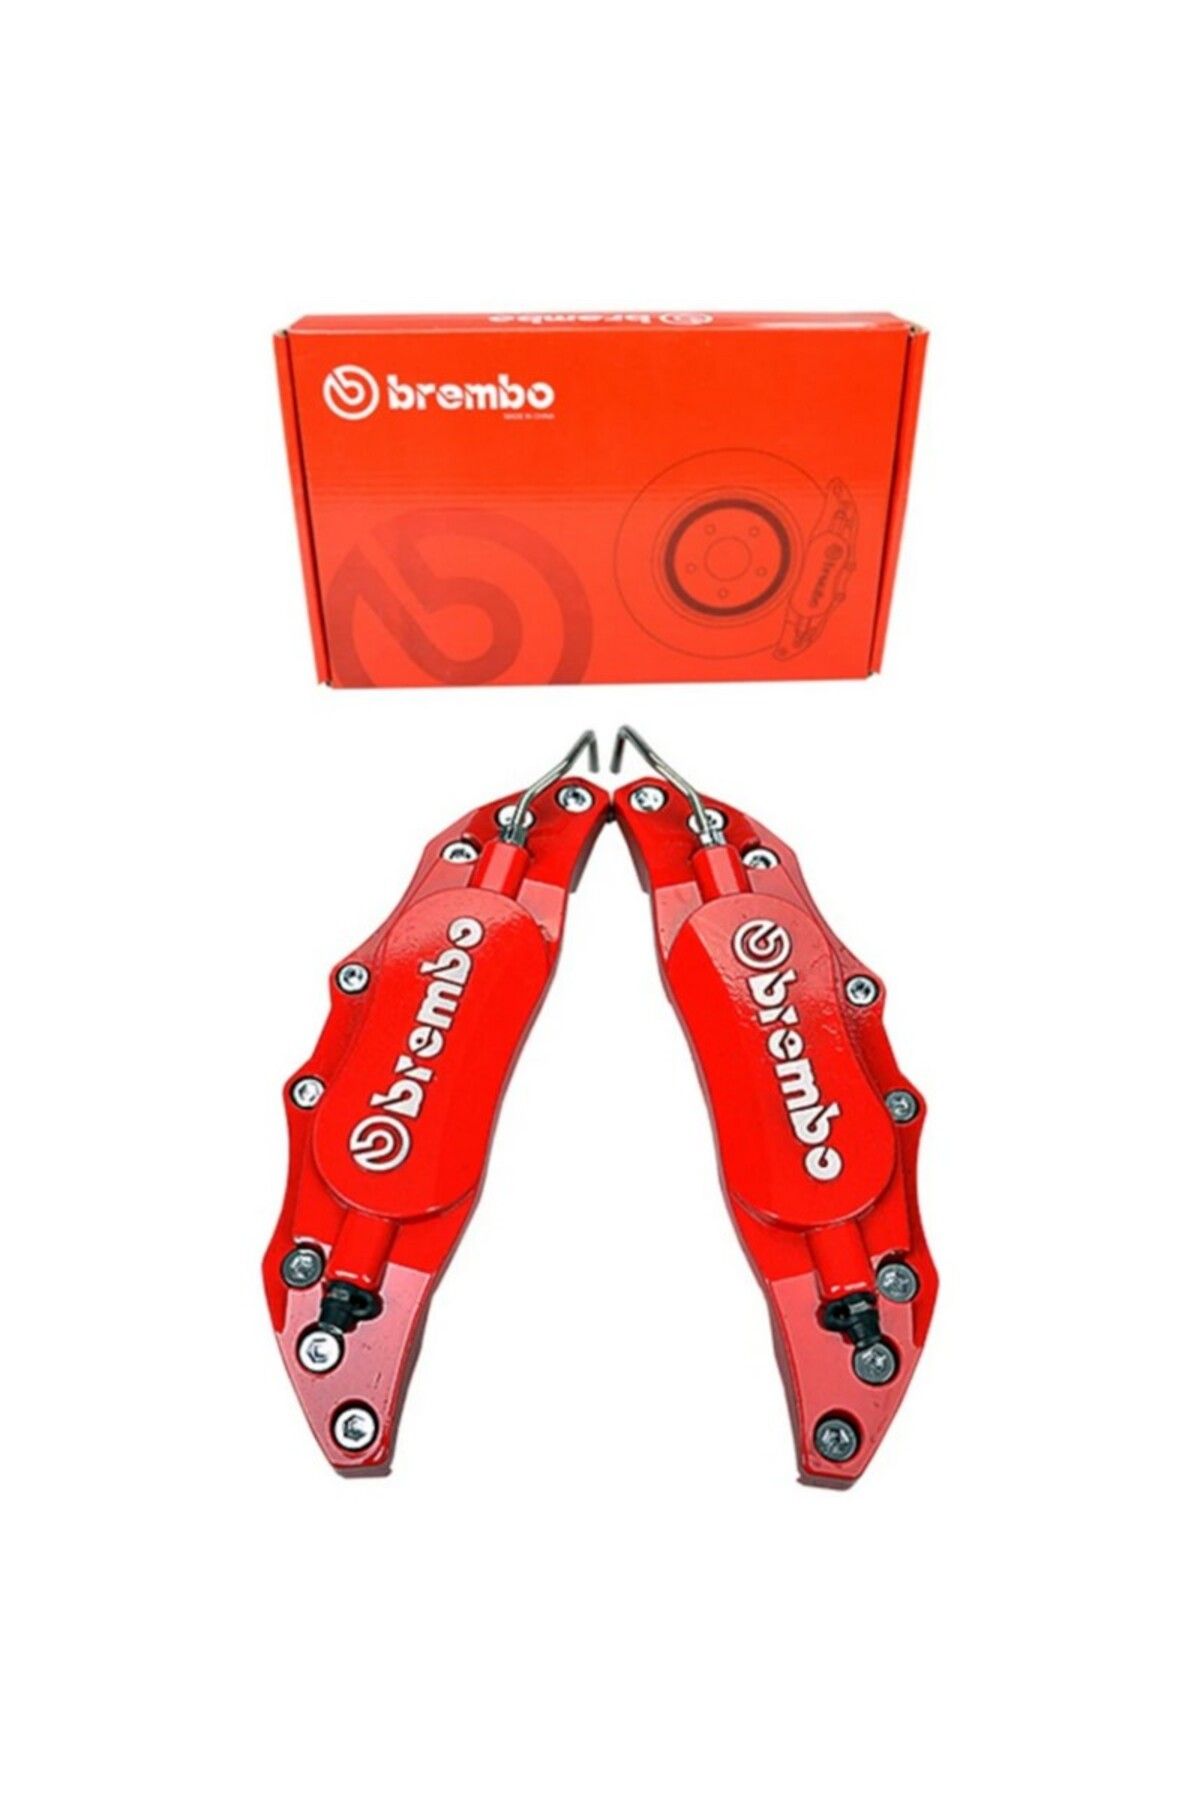 Otobestto Brembo Metal Jant Kaliper Kapağı Kabartma Yazılı Jant Braketi 2li Set Krom Kırmızı